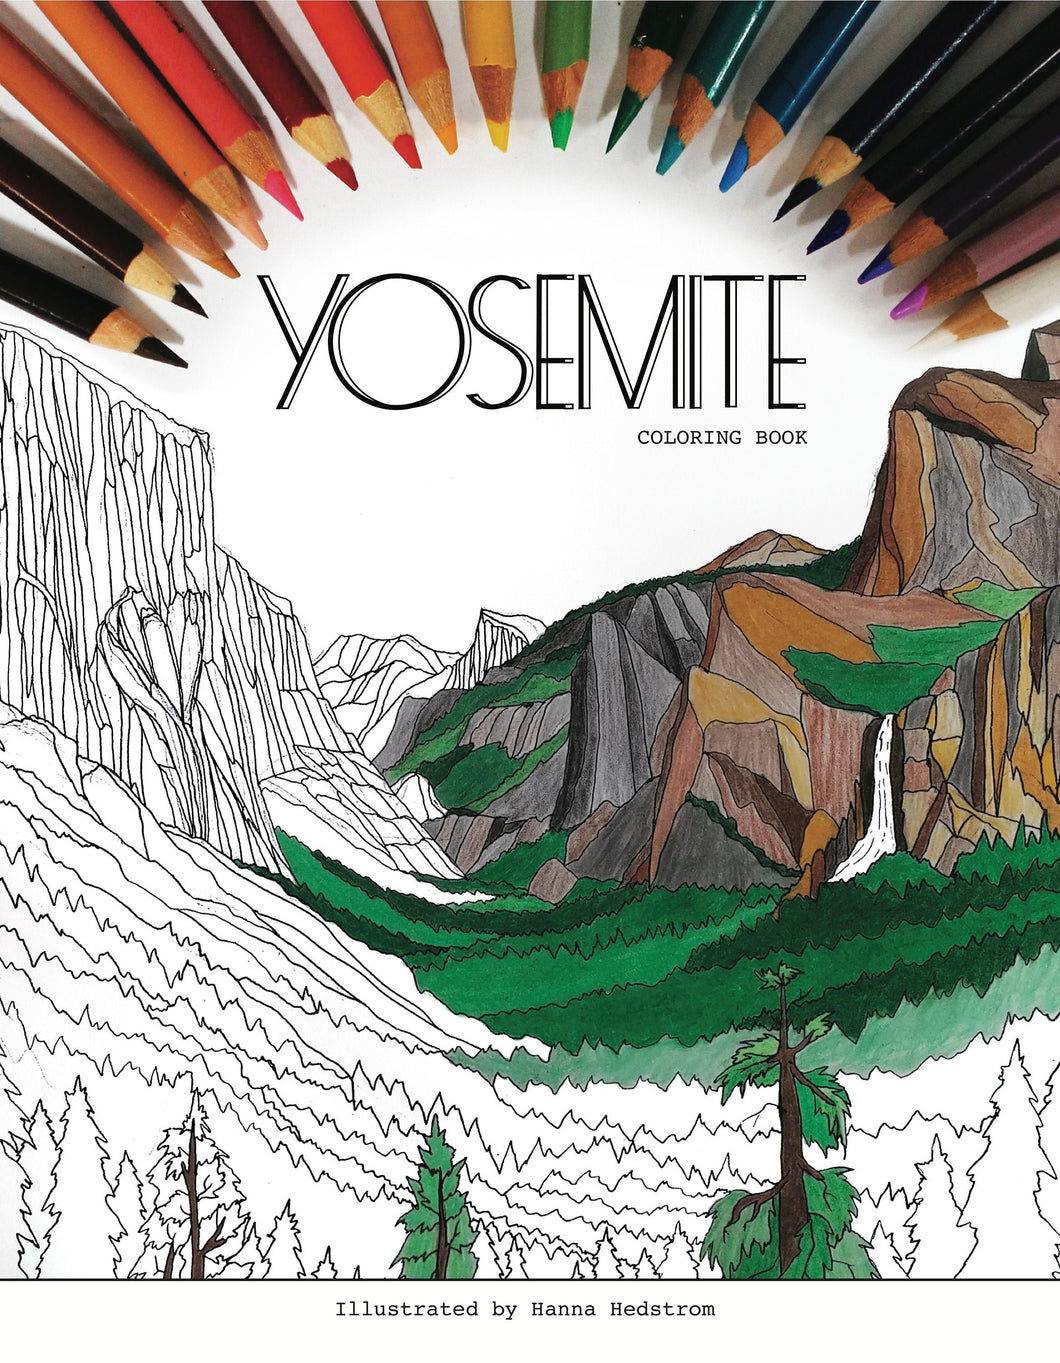 Yosemite Coloring Book PDF Download